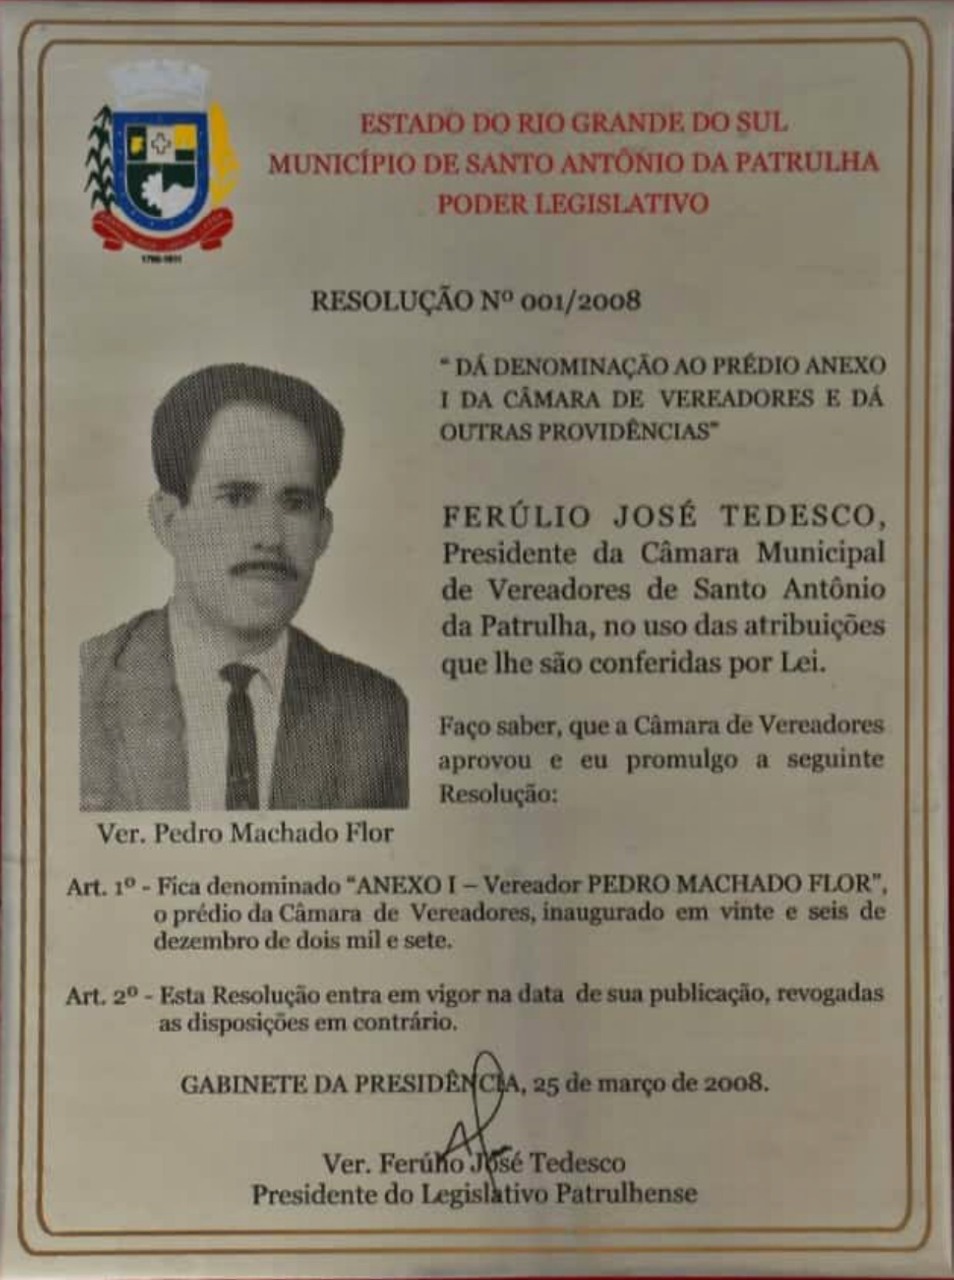 Vereador Pedro Machado Flor